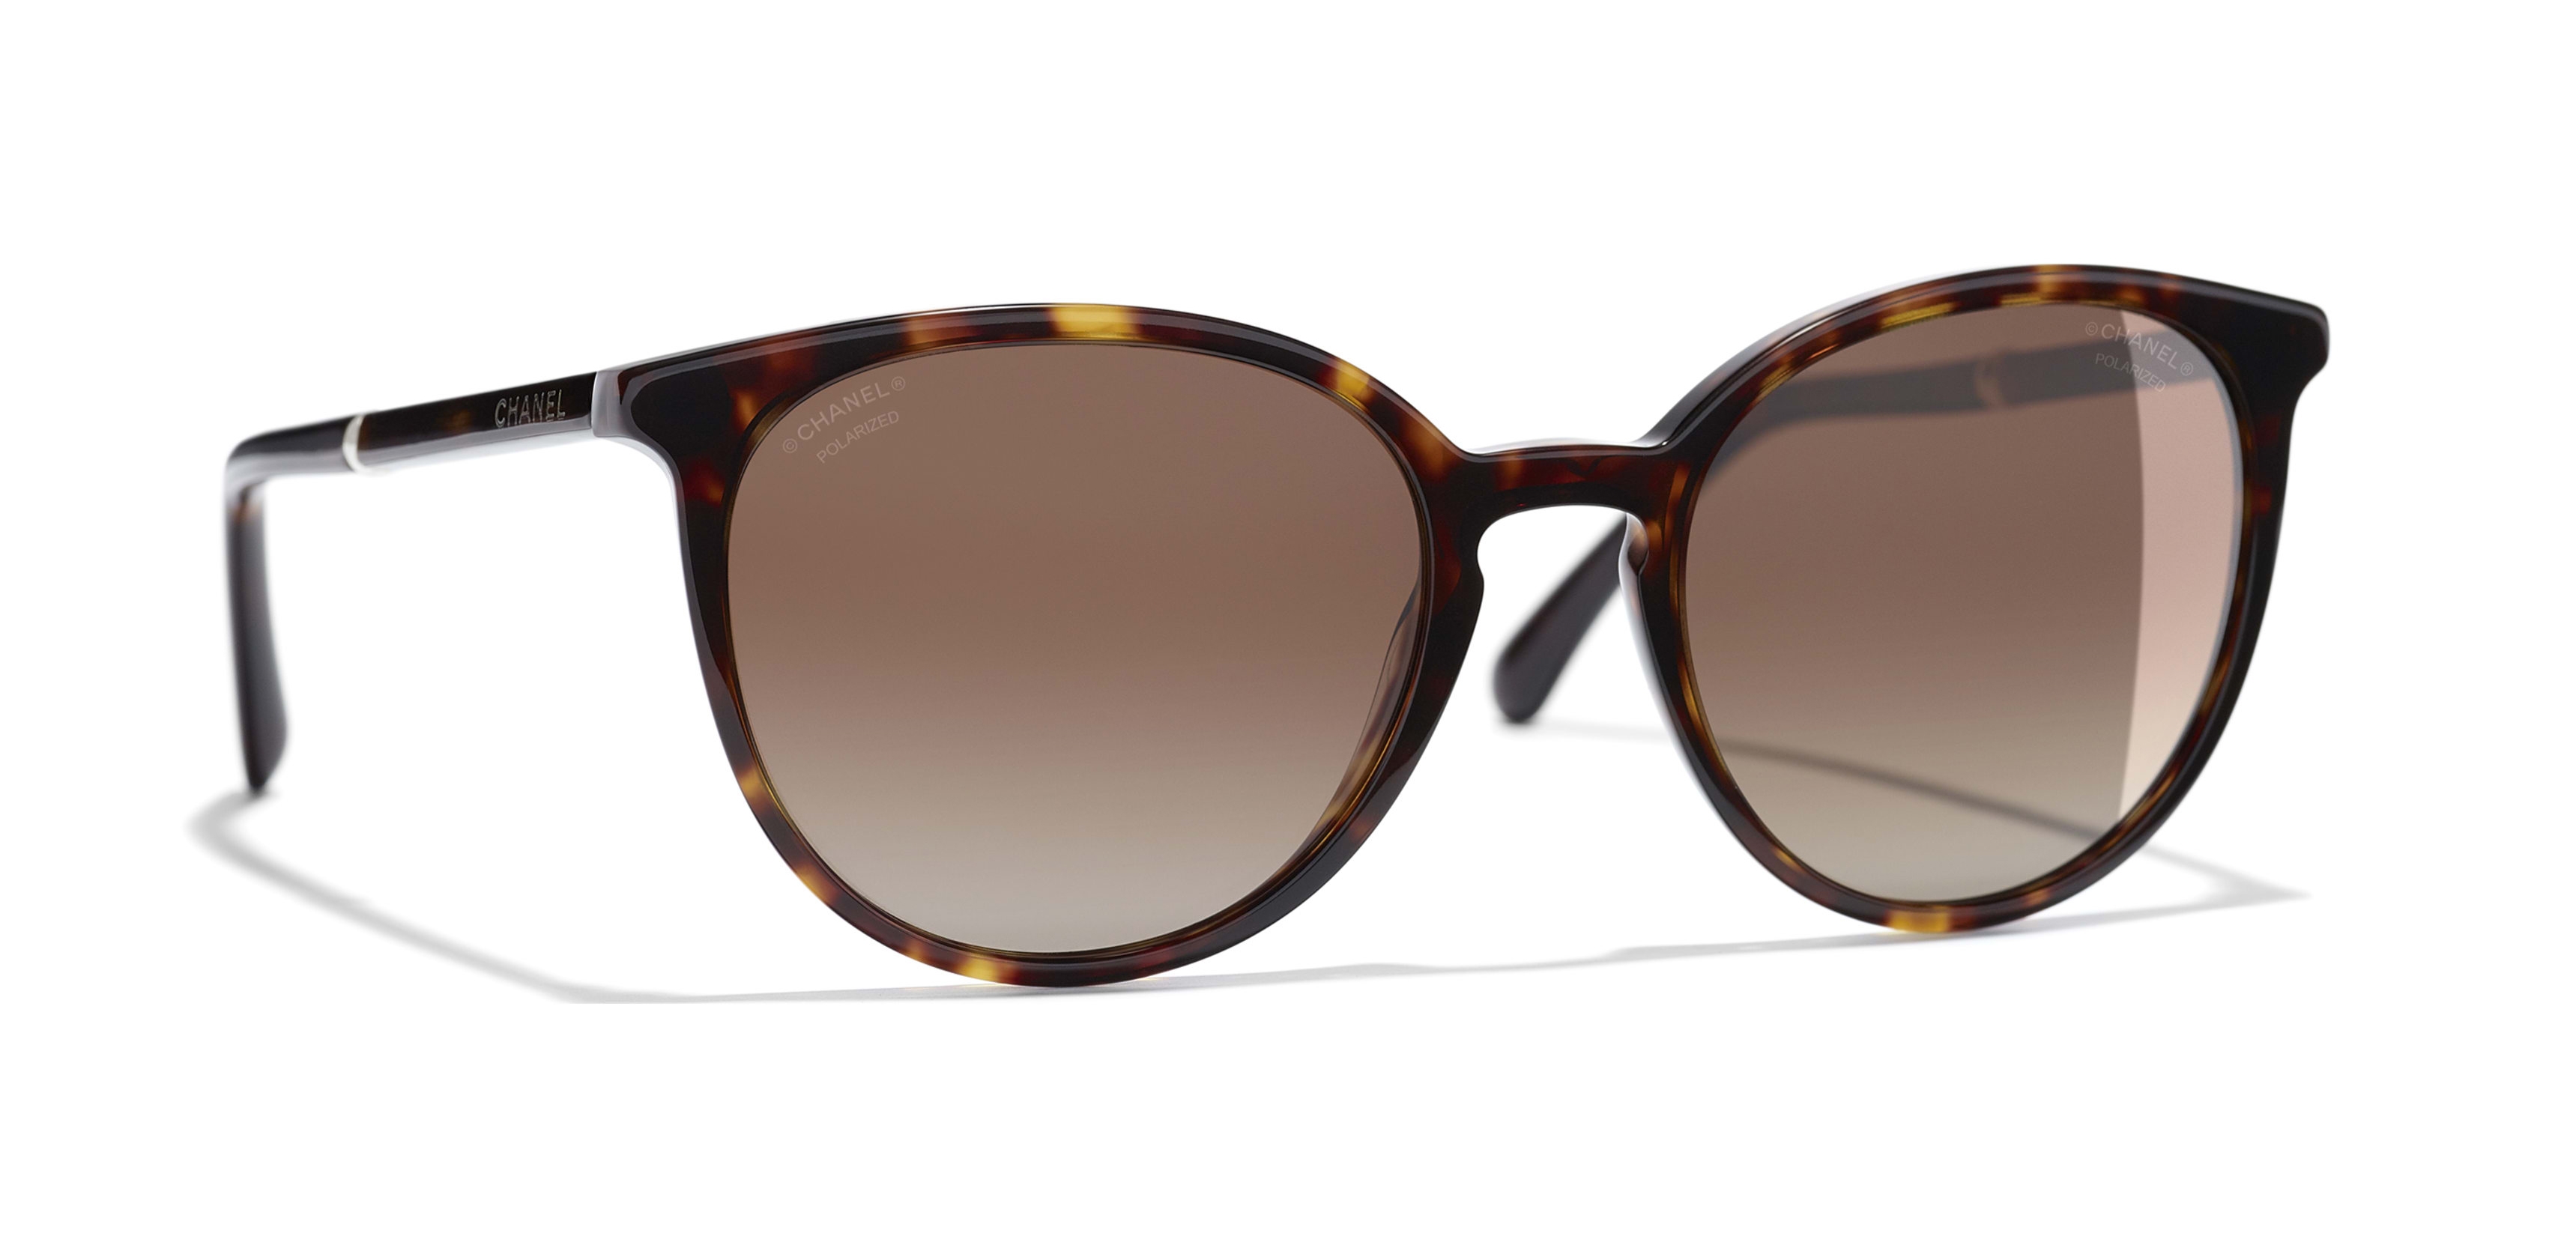 Chanel - Butterfly Sunglasses - Dark Brown Gray - Chanel Eyewear - Avvenice